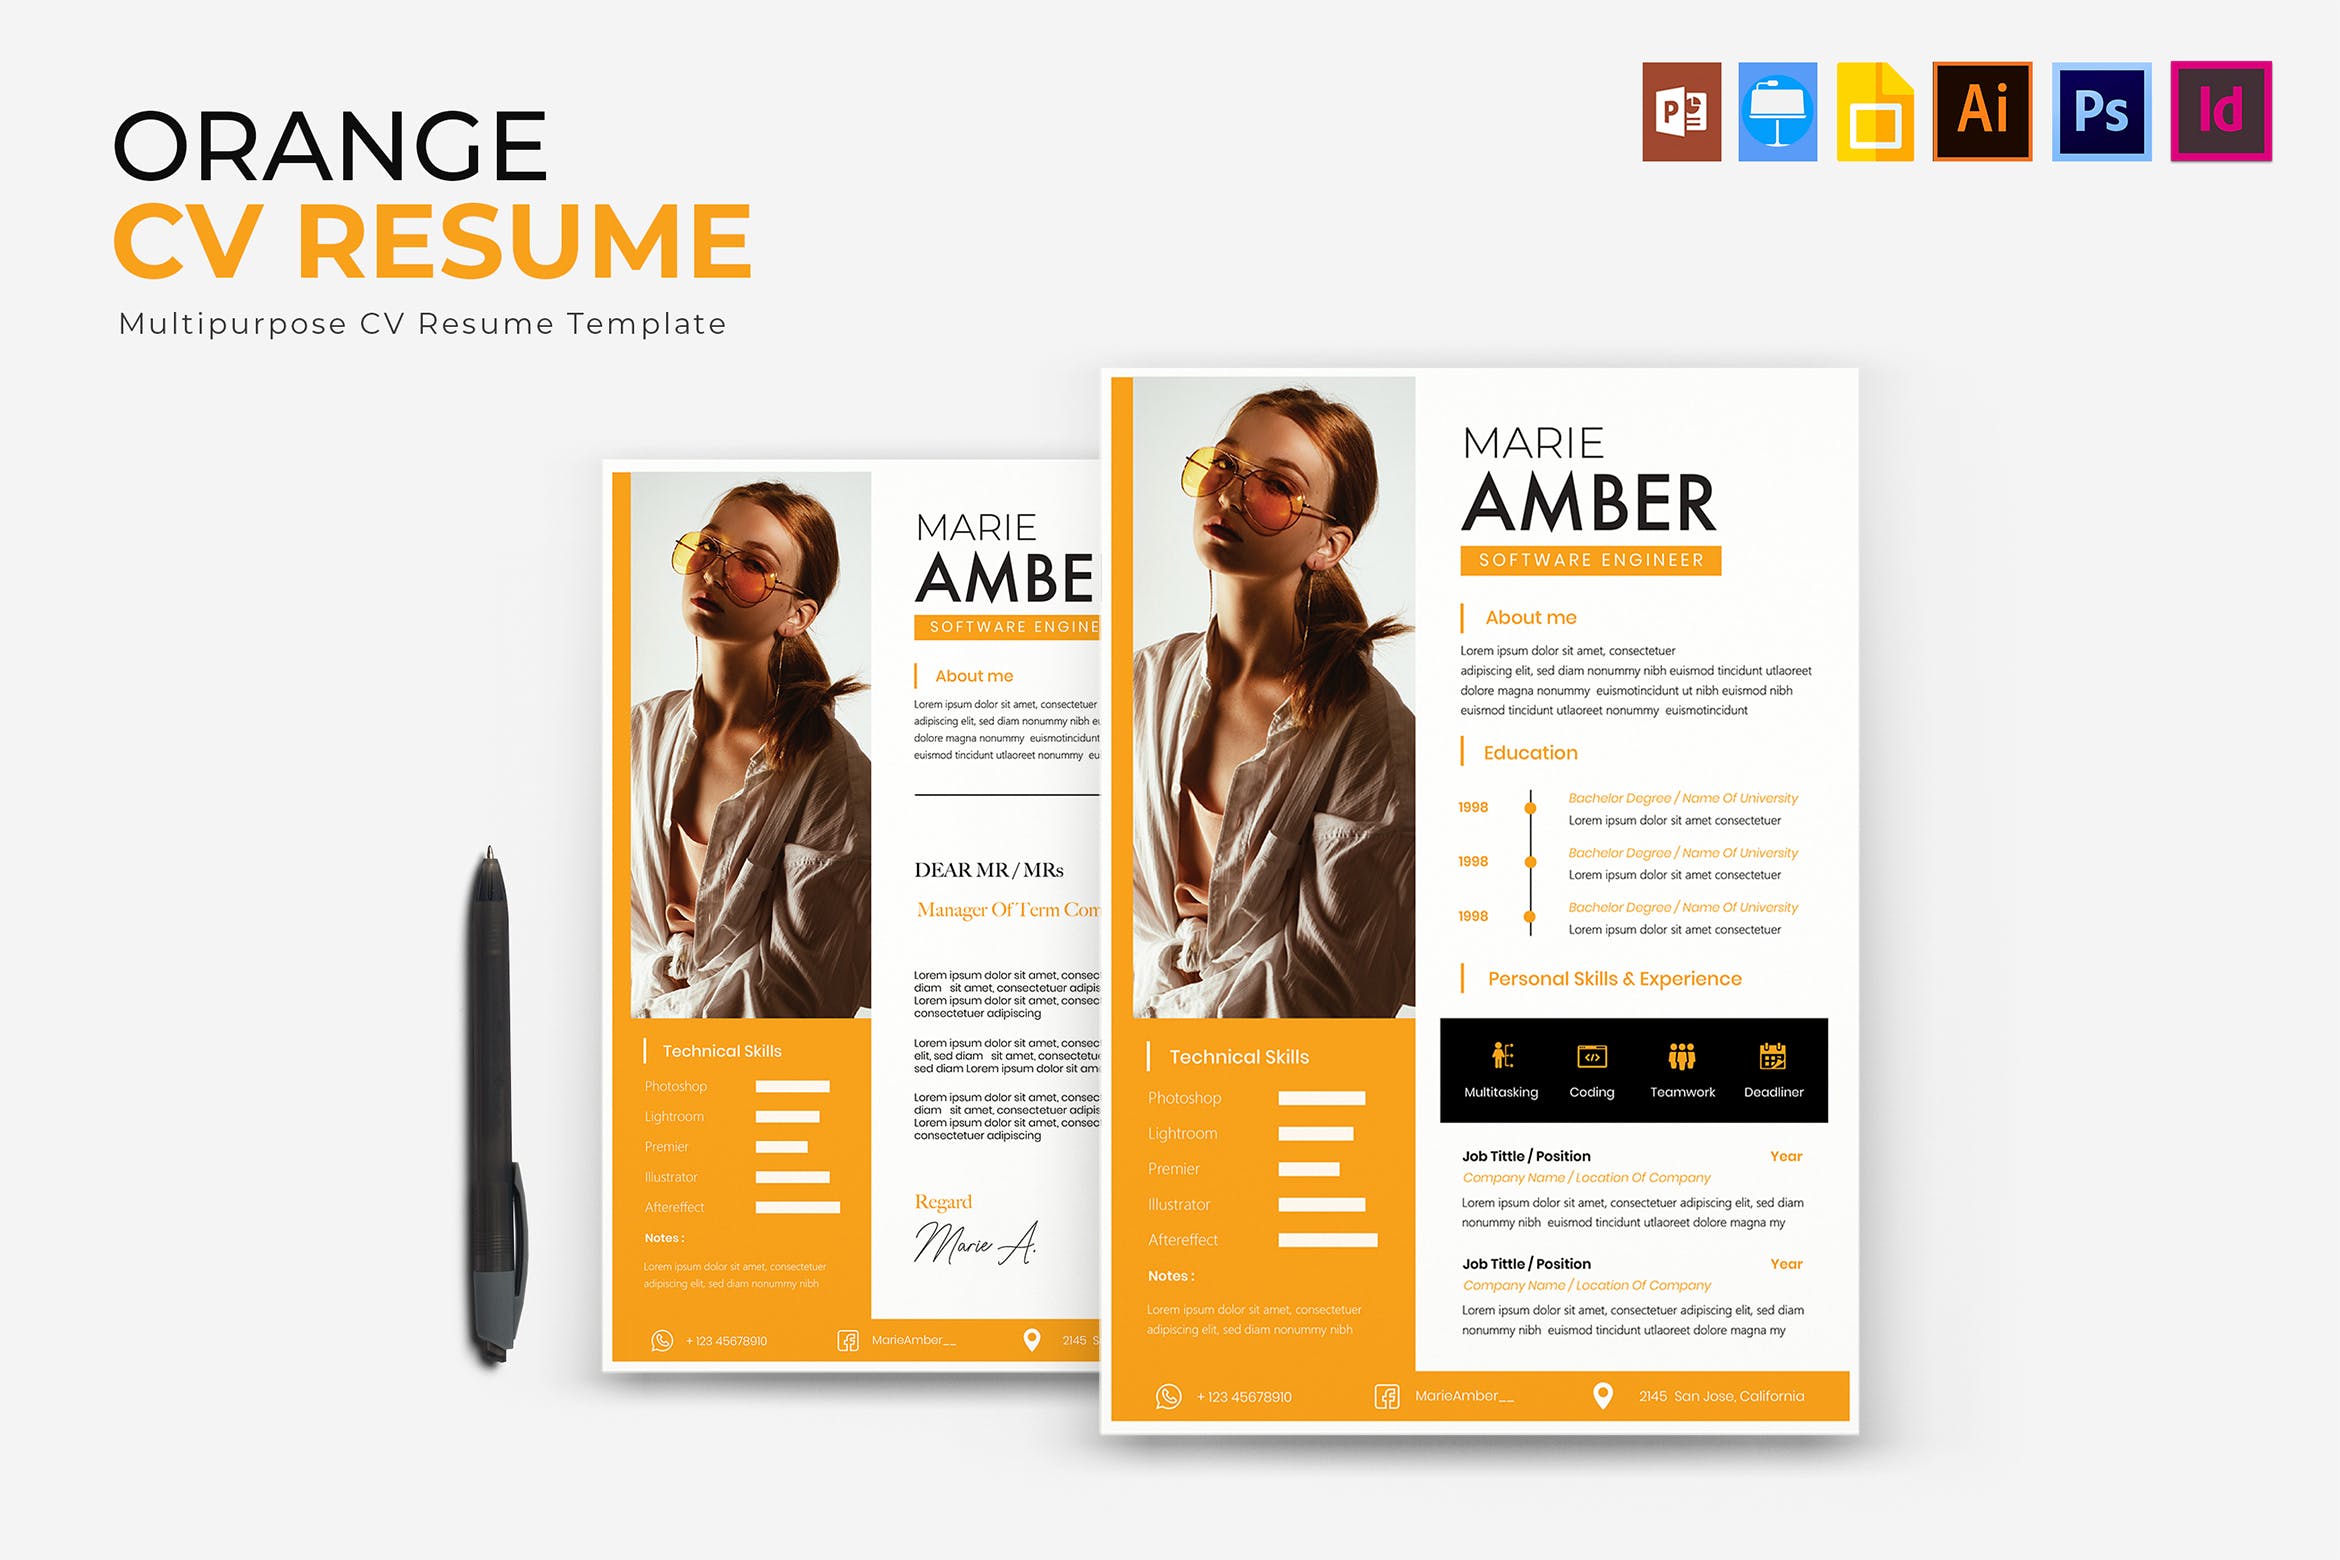 橙色设计风格个人简历&推荐信模板 Orange | CV & Resume Template插图